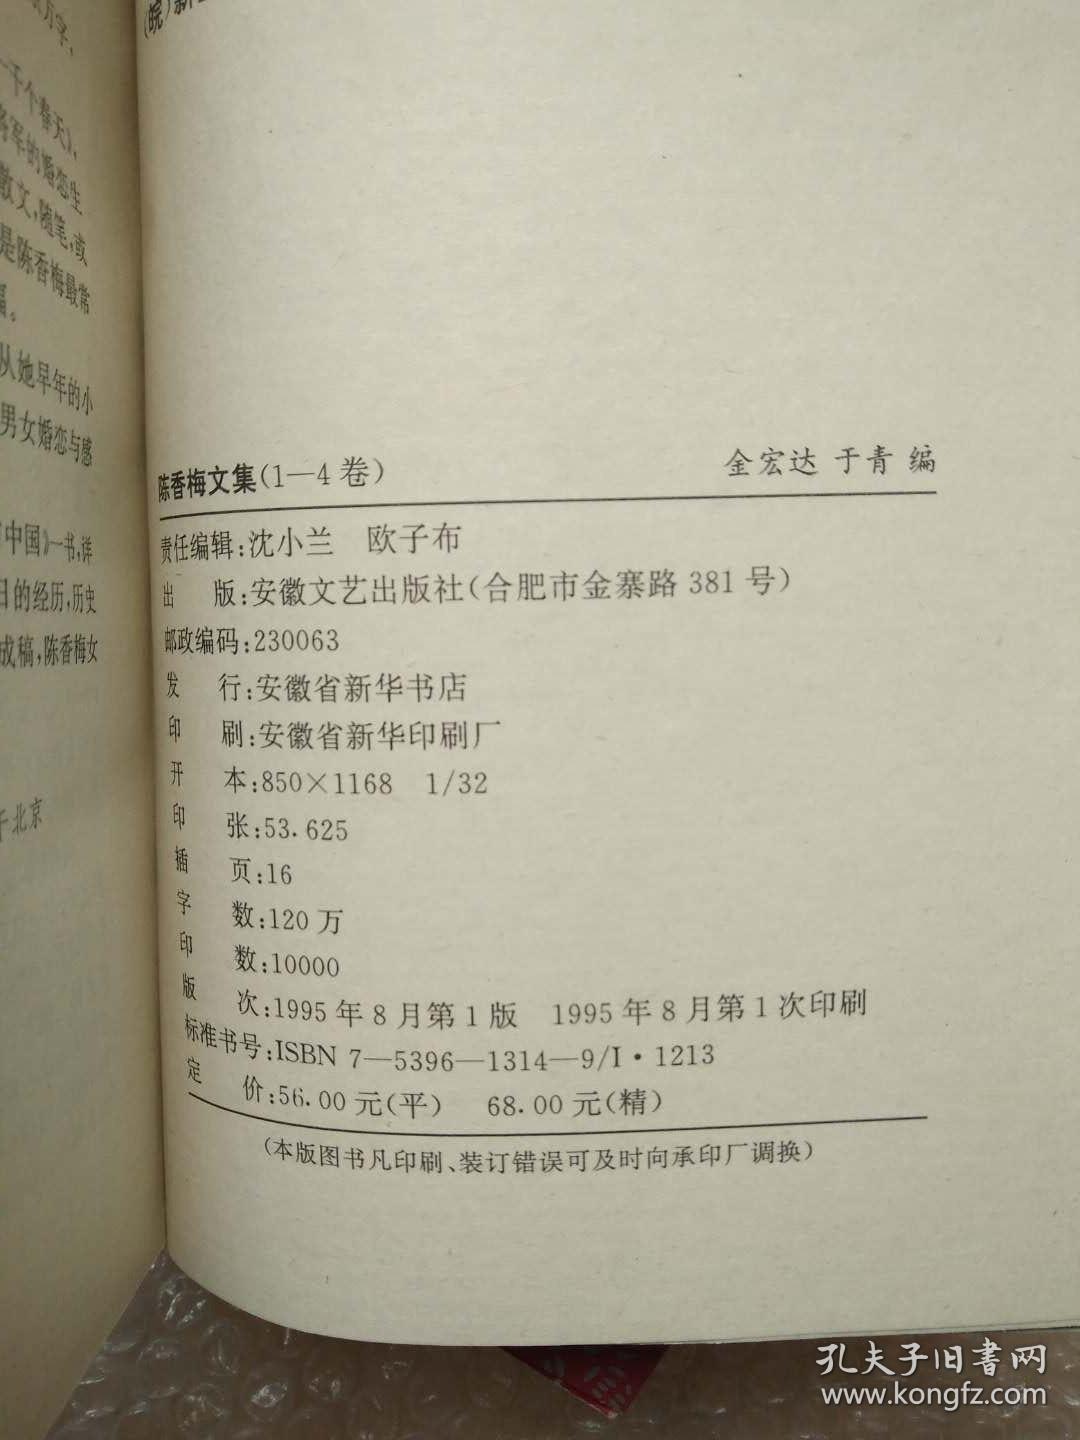 陈香梅文集1-4卷全